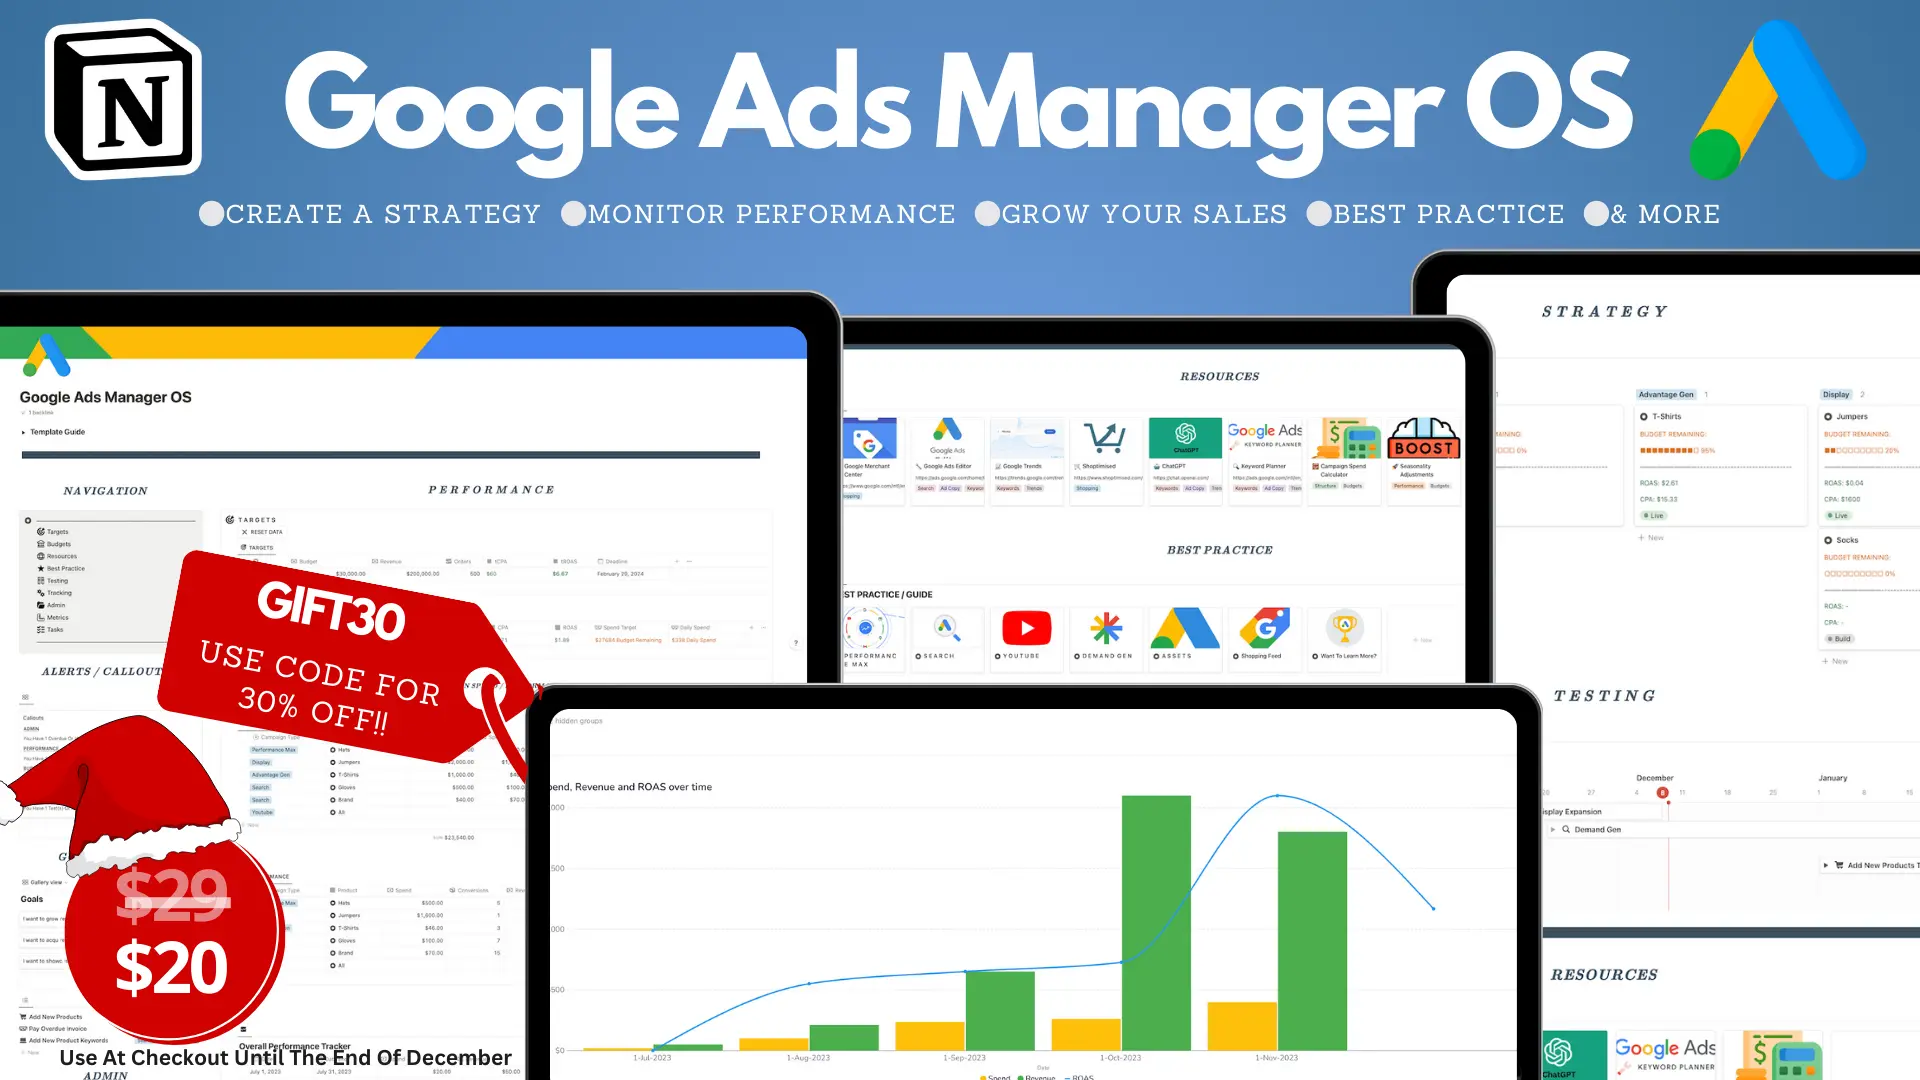 Google Ads Manager OS image